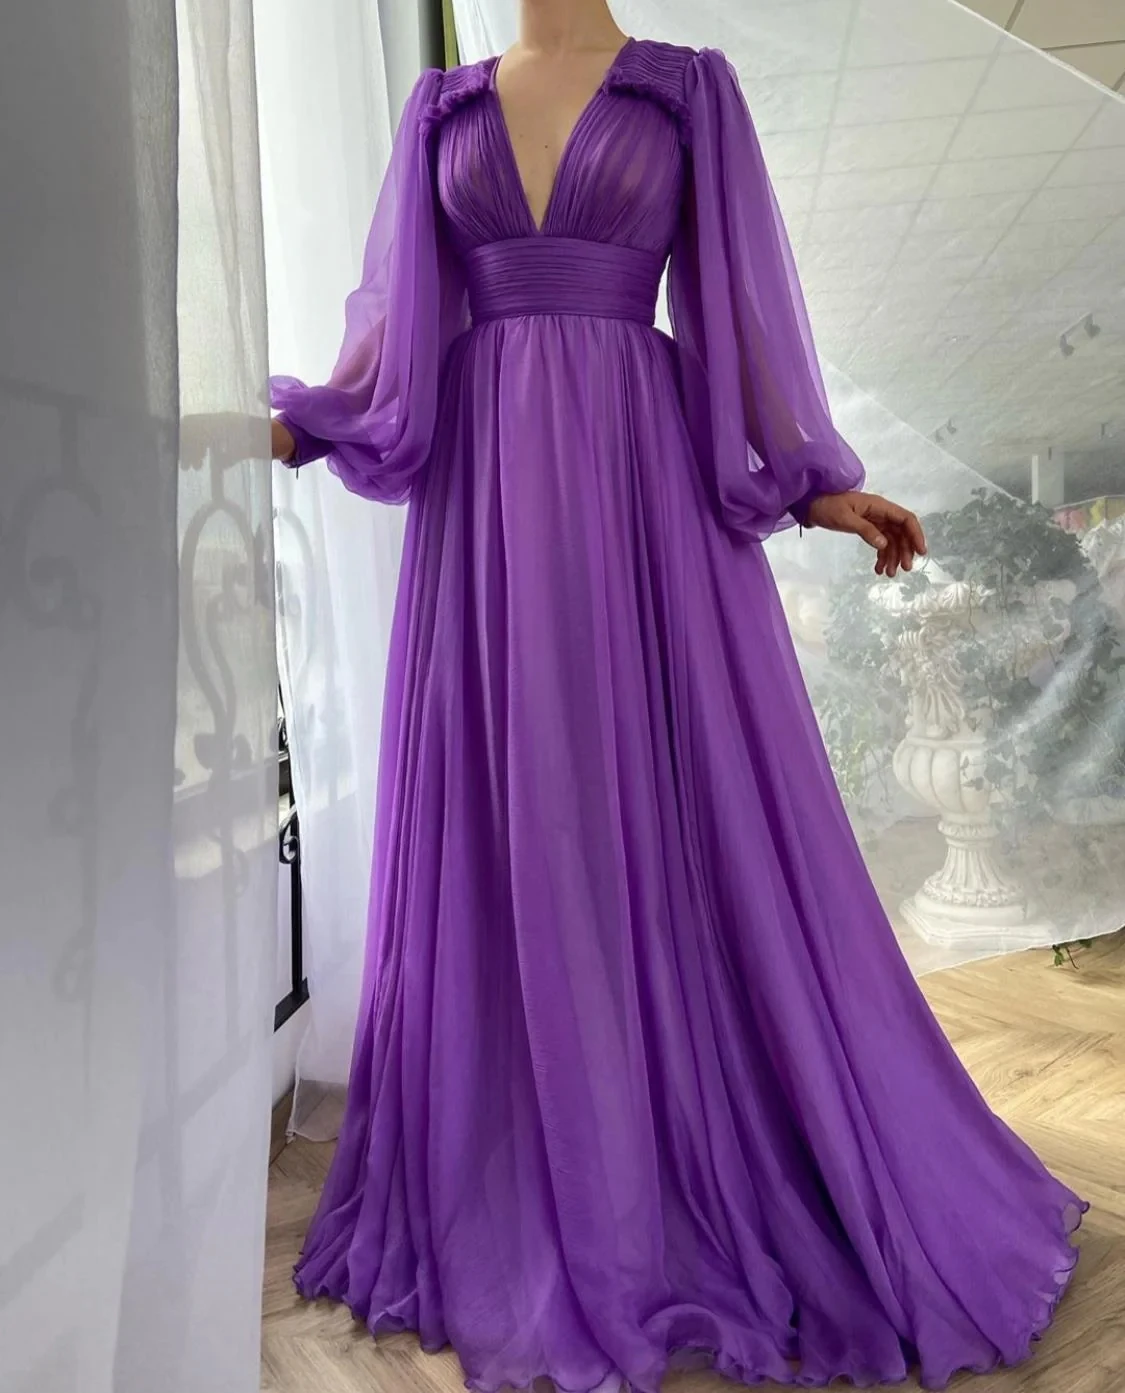 

Фиолетовые марокканские вечерние платья а-силуэта с глубоким V-образным вырезом и длинными рукавами, шифоновые длинные платья для выпускного вечера из Турции, Дубая, Саудовской Аравии